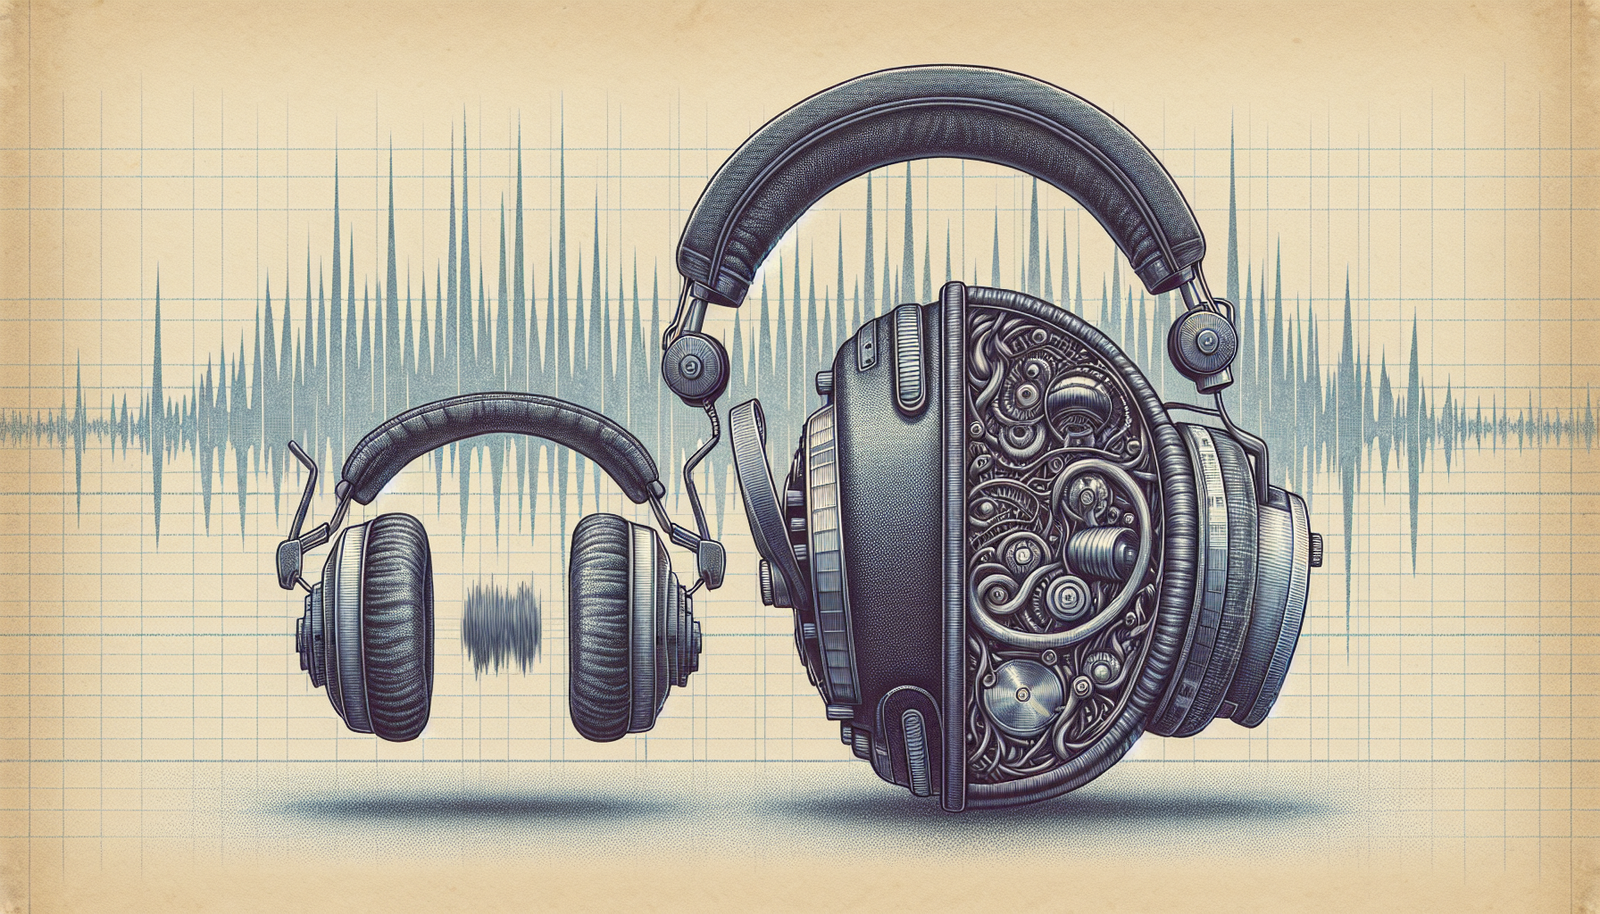 Comparison between studio and consumer headphones